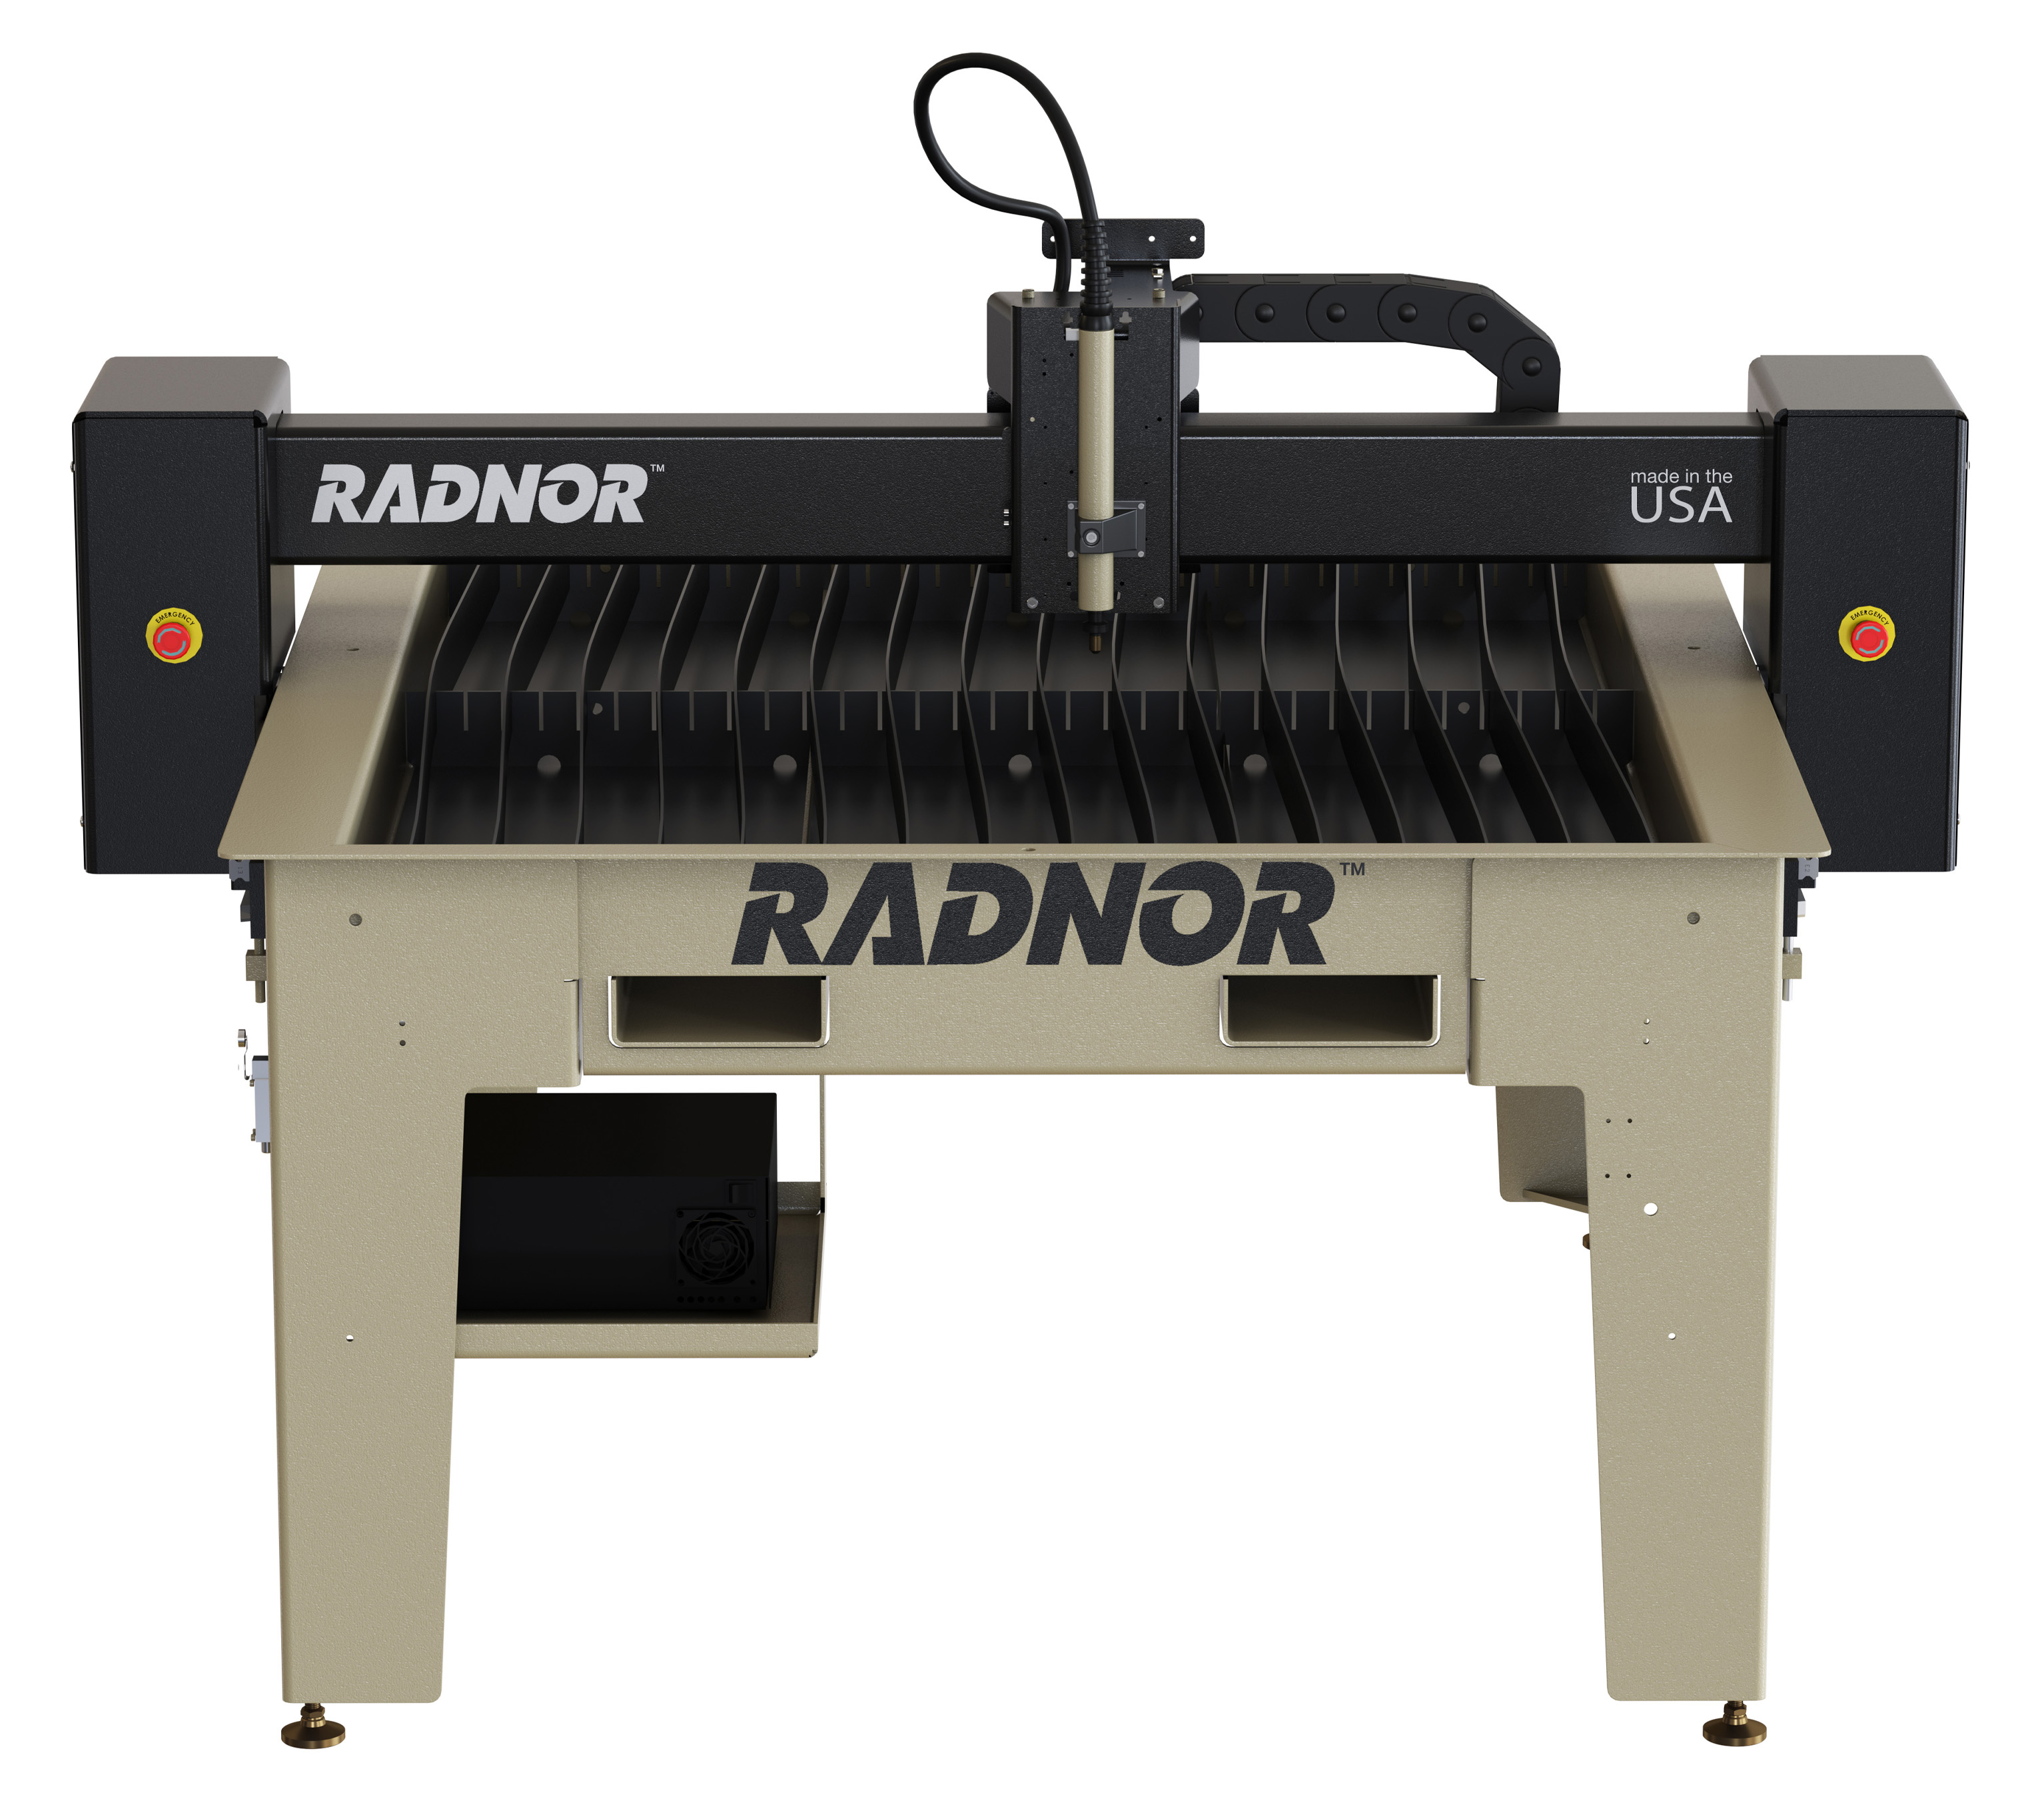 4’x4’ RADNOR plasma cutting table